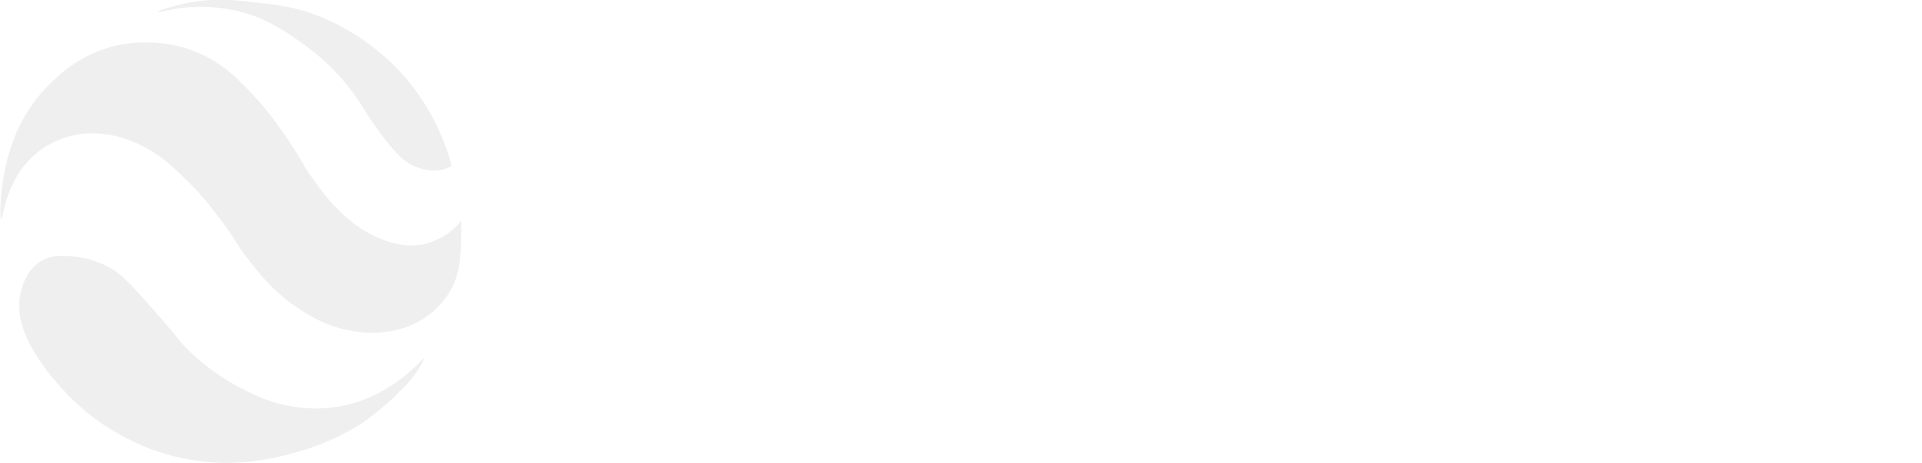 PlanetOfSkins